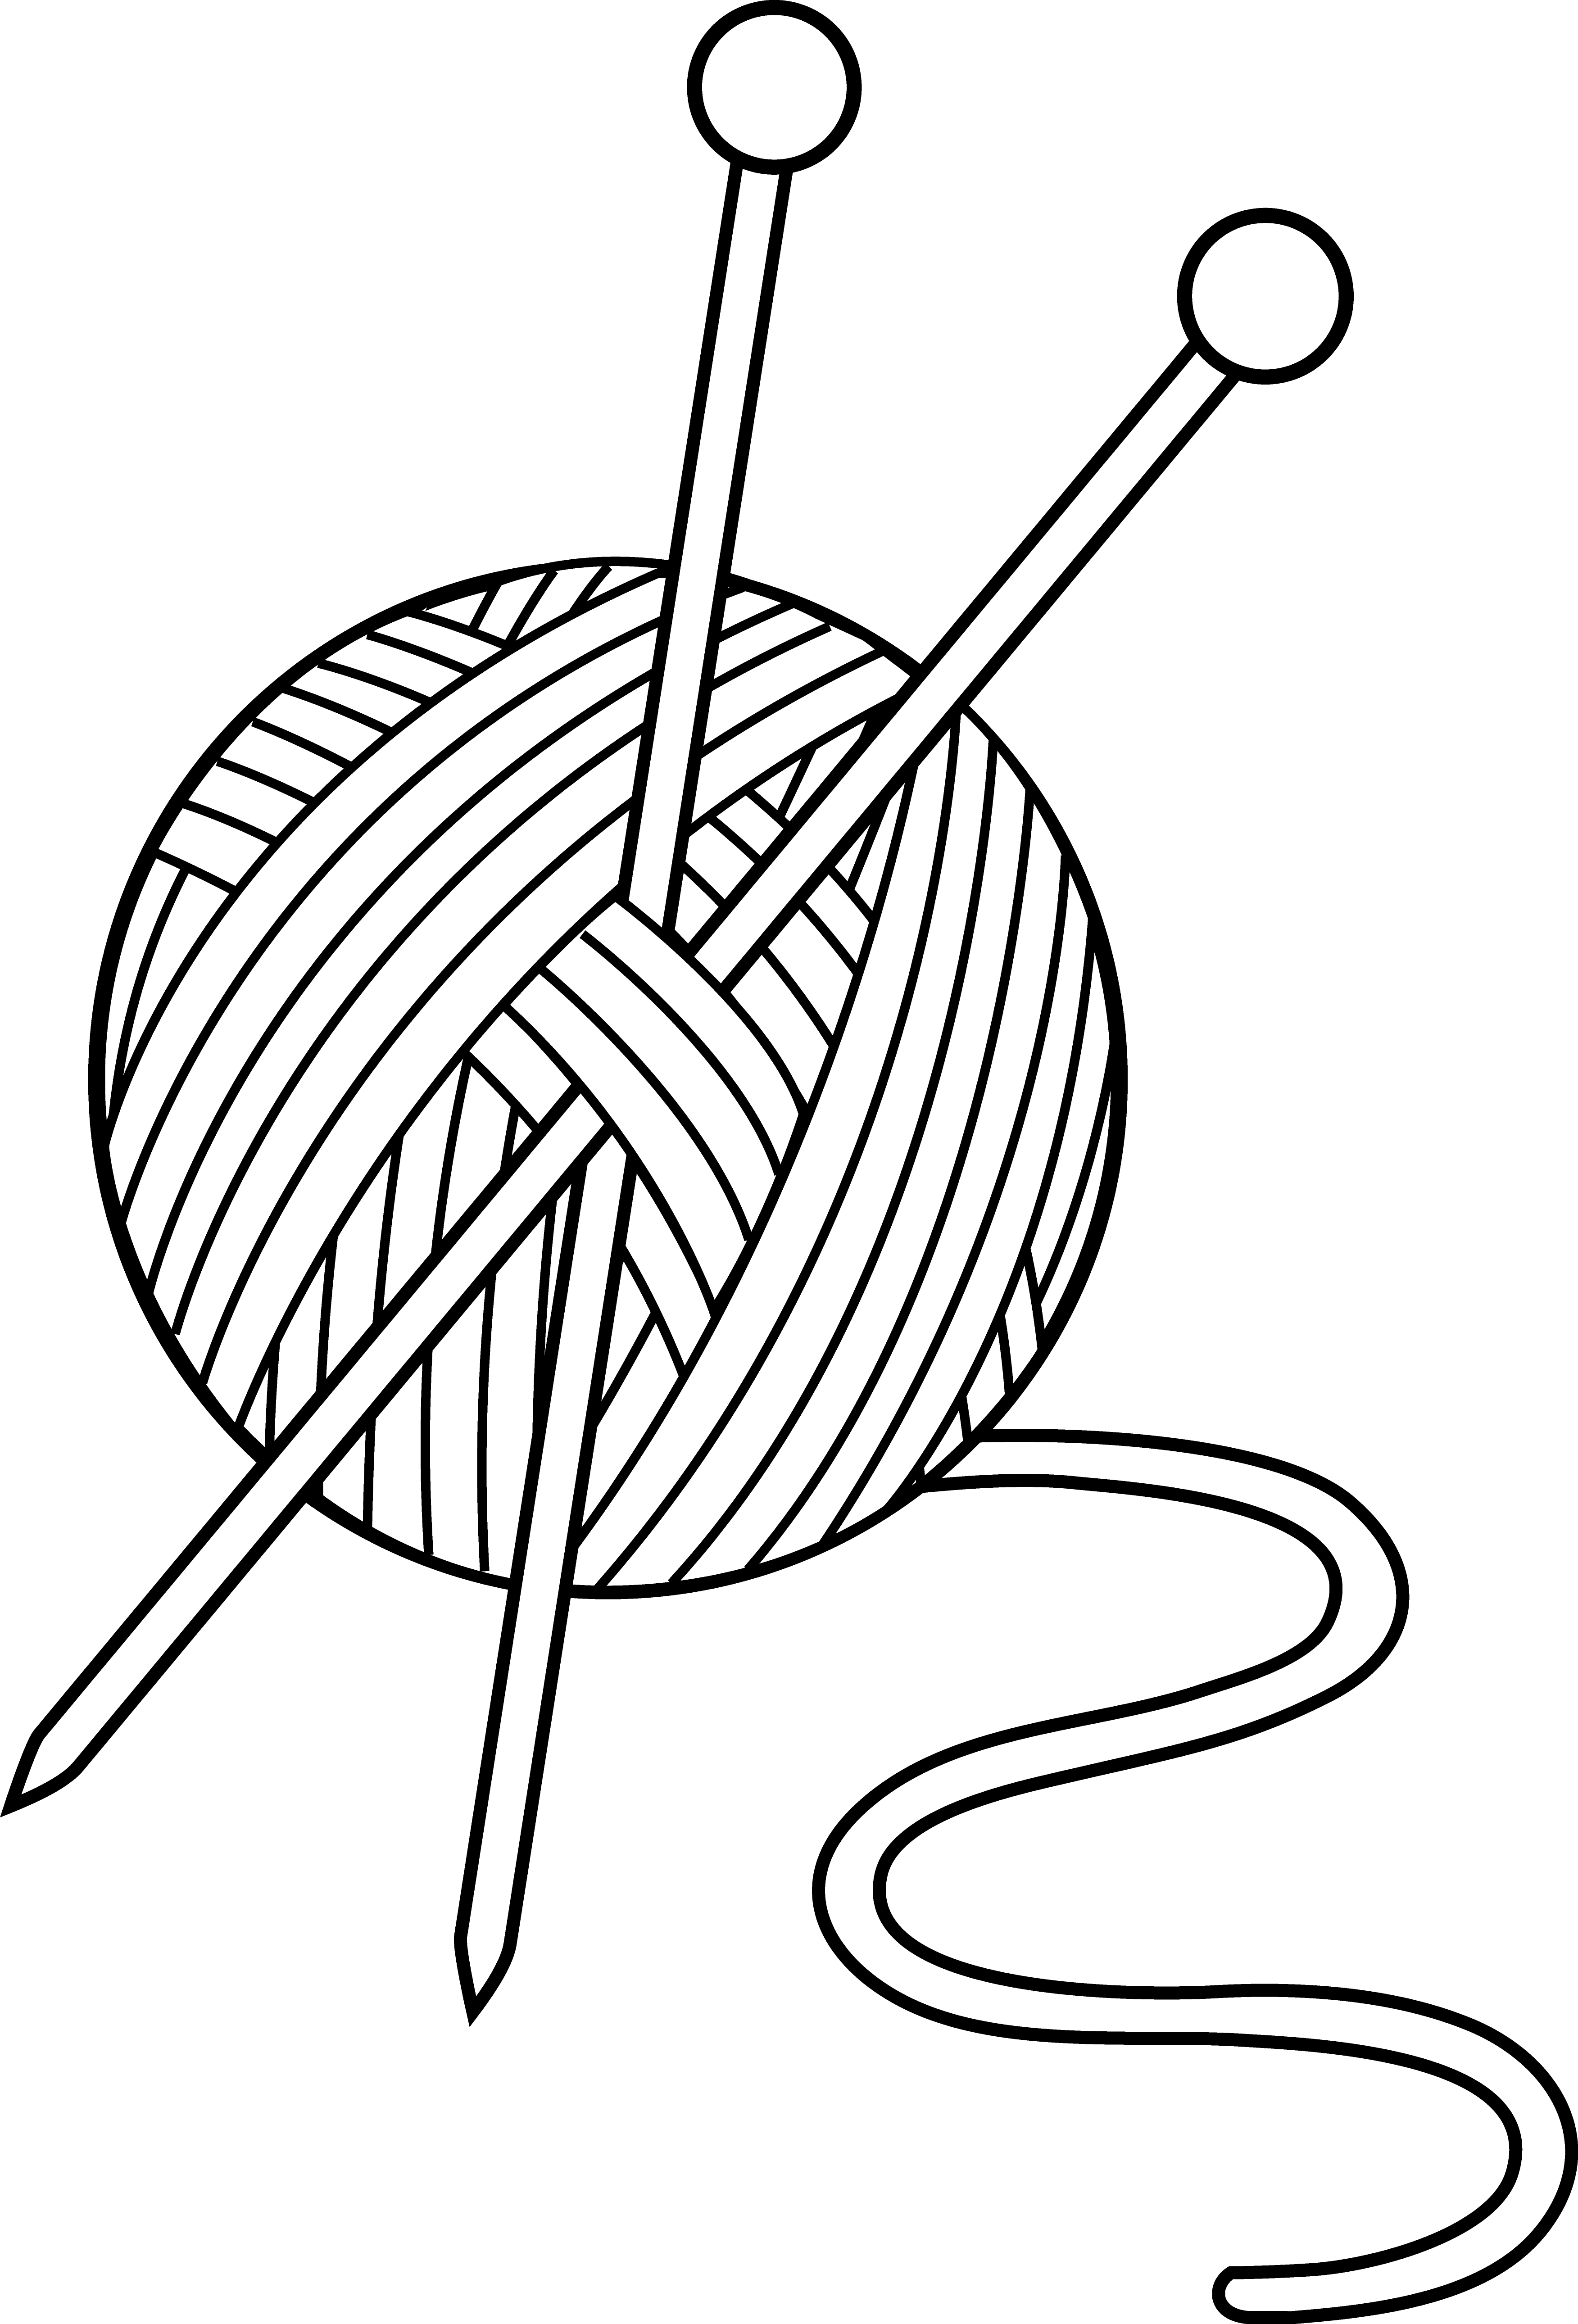 Ball Of Yarn Crochet Clip Art